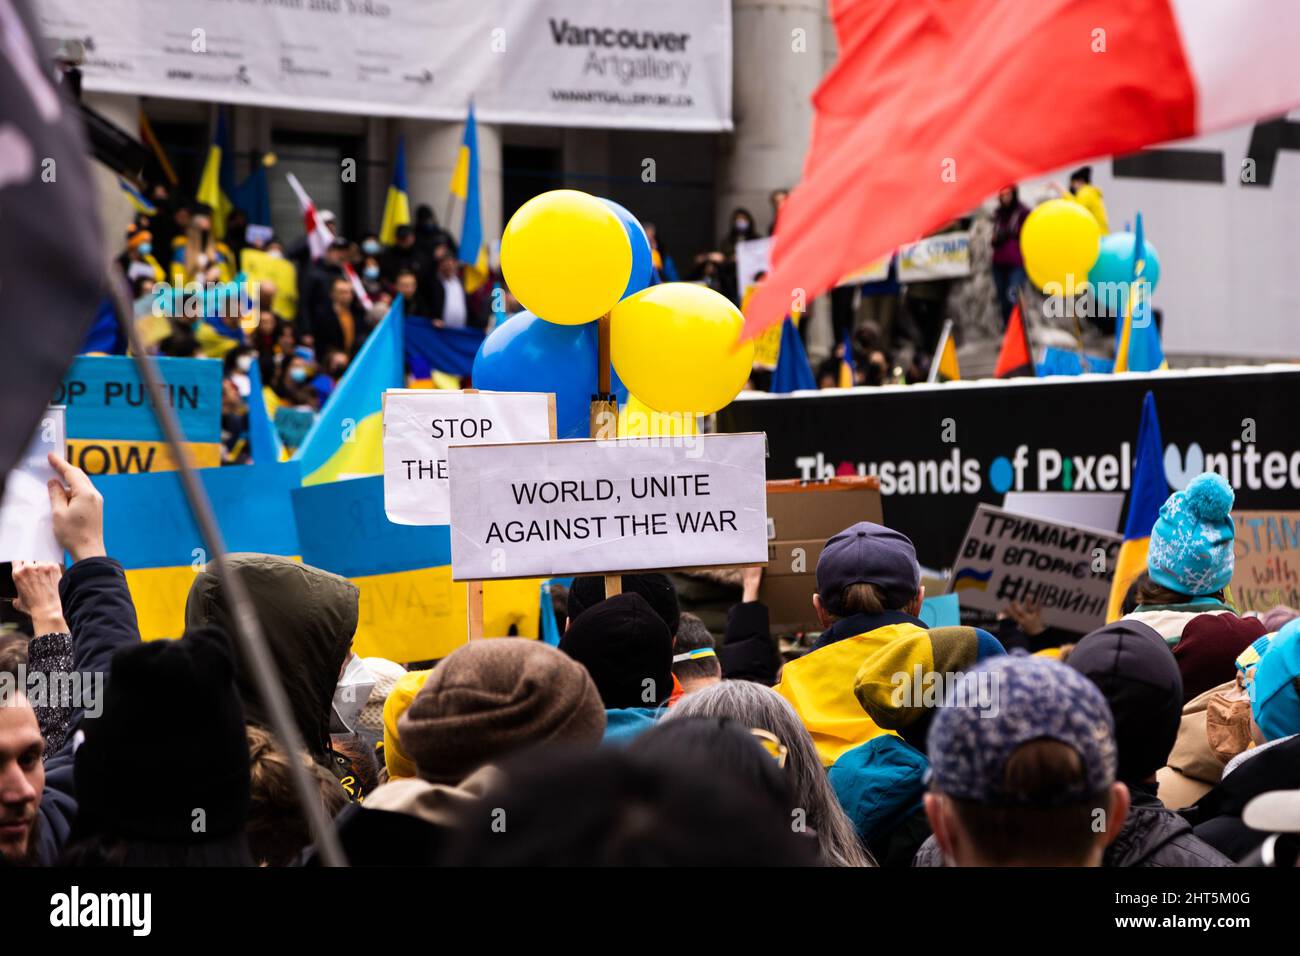 DOWNTOWN VANCOUVER, BC, KANADA - 26. FEBRUAR 2022: Protestkundgebung gegen Wladimir Putin und die russische Invasion in der Ukraine, an der Tausende teilnahmen Stockfoto